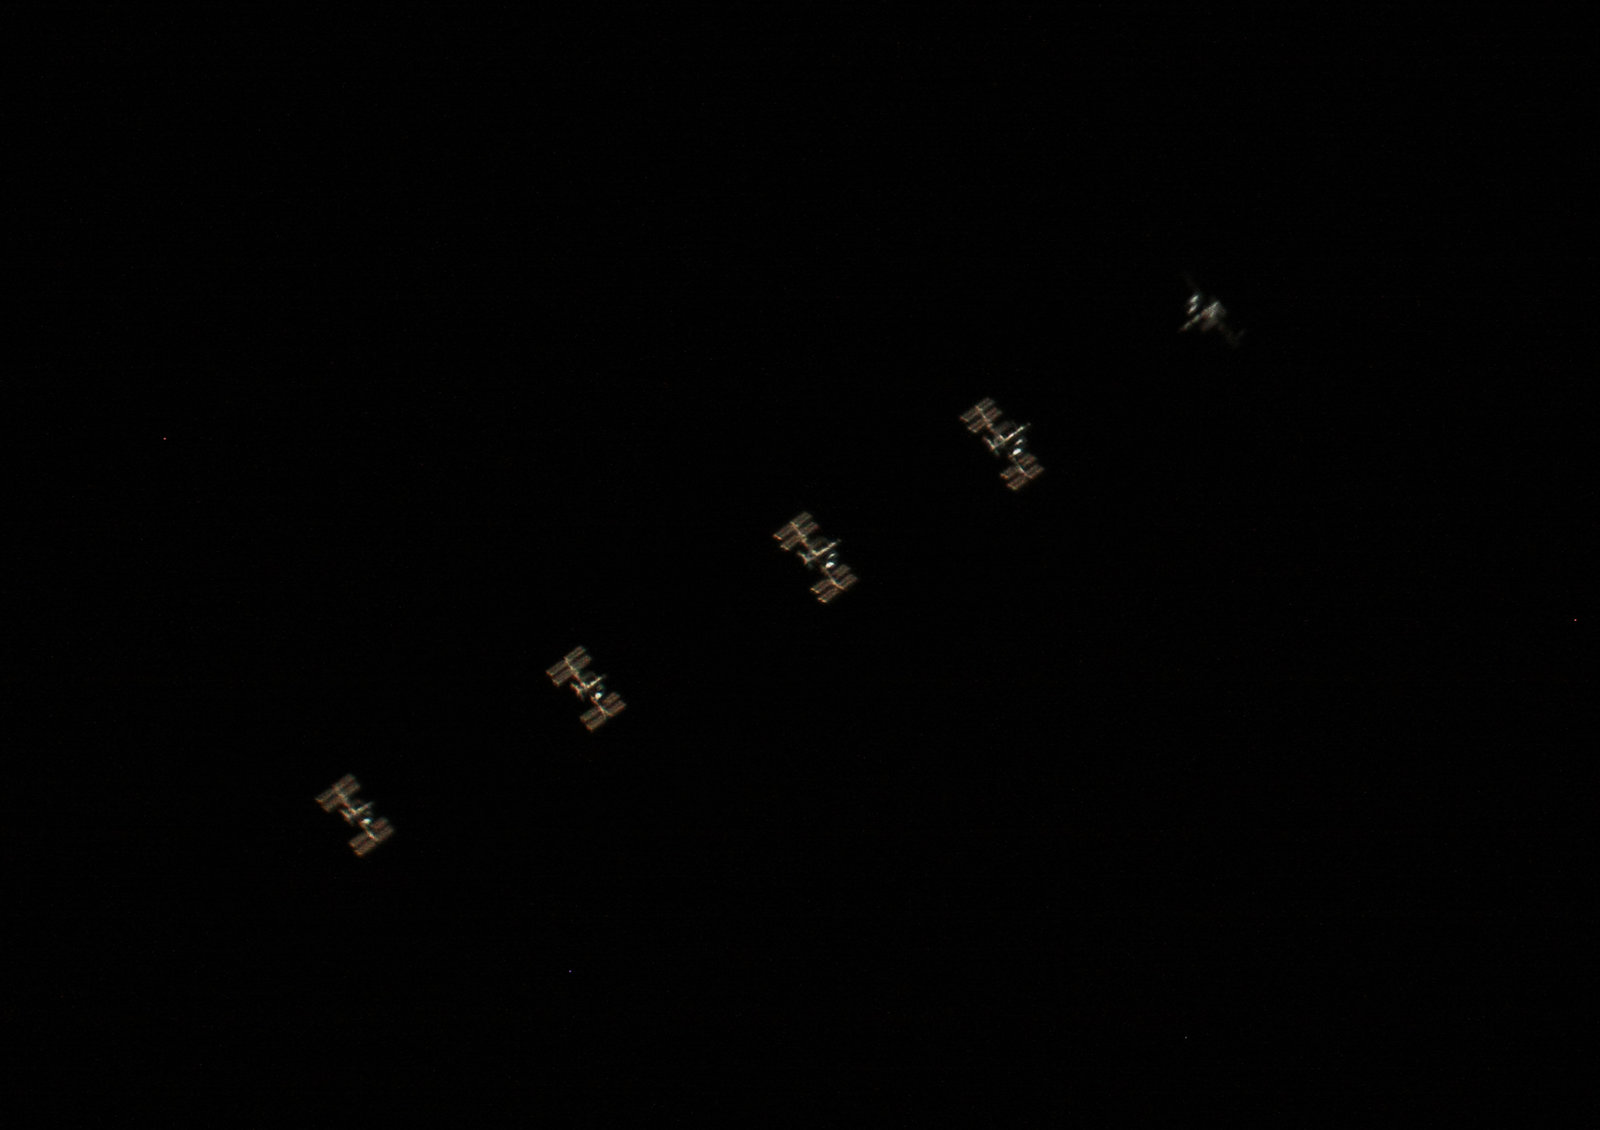 ISS.thumb.jpg.a8cbec352d88b72bb9cf24c604a3e7ae.jpg